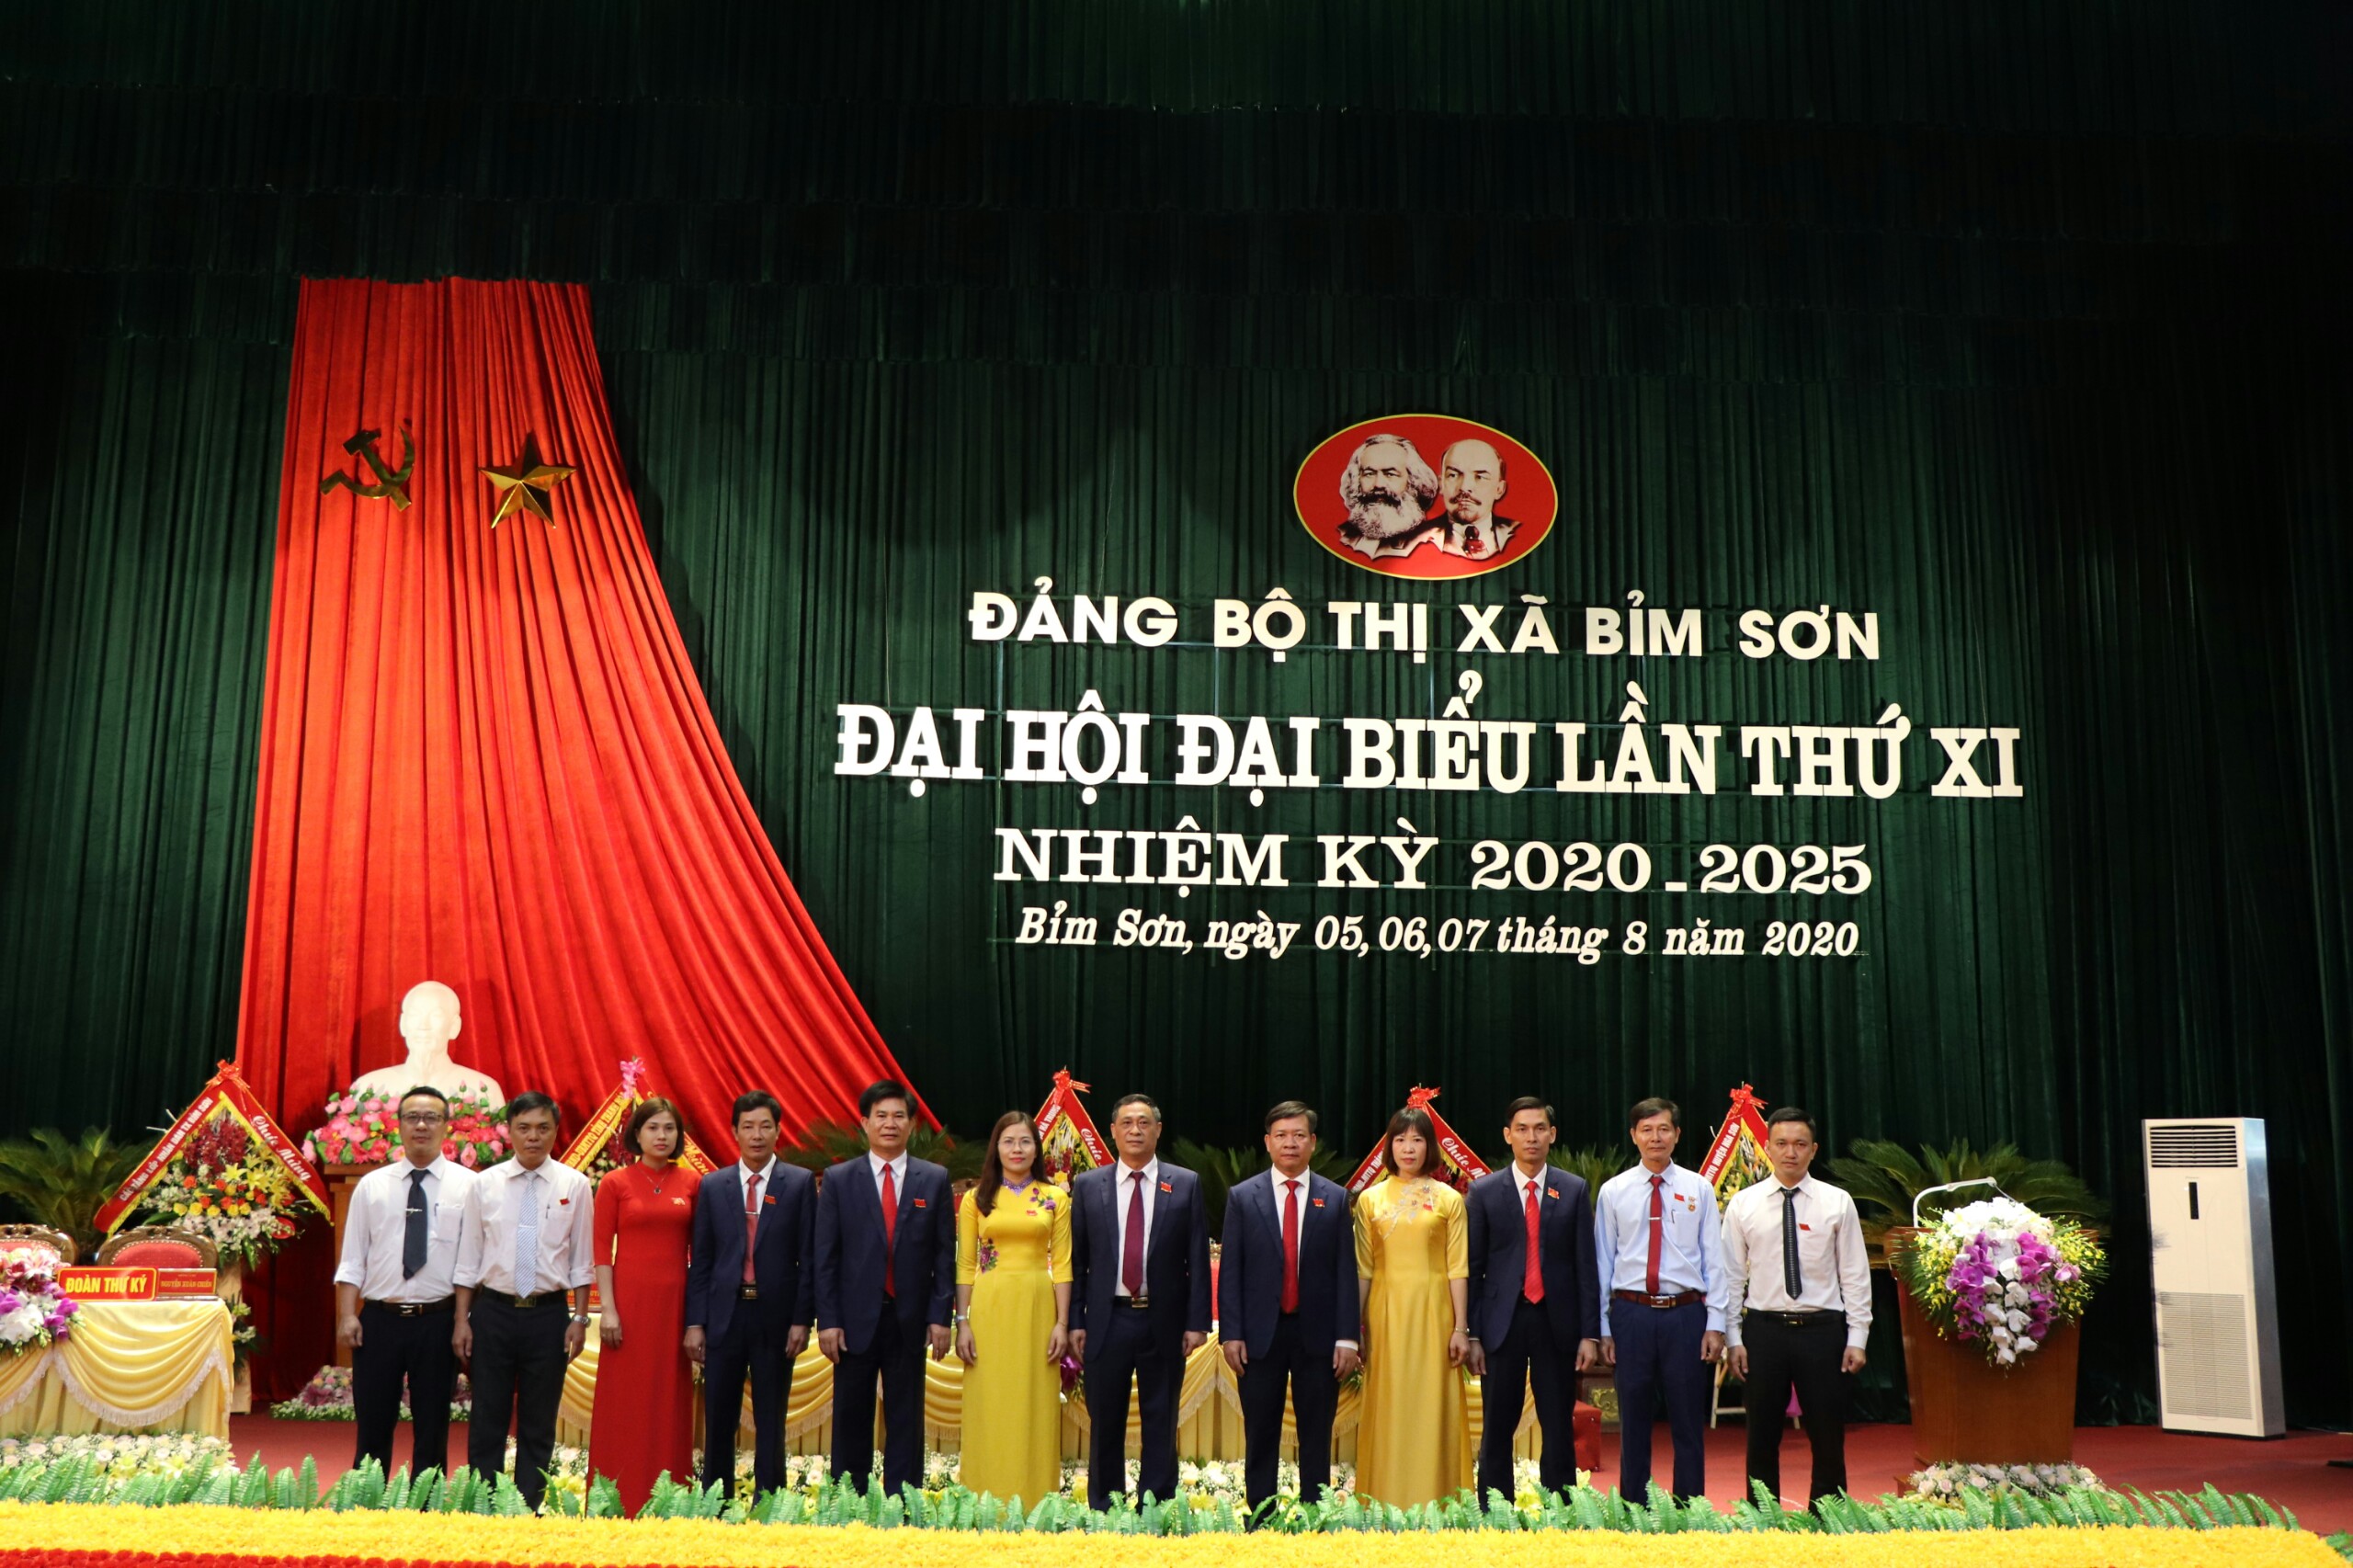 Đồng chí Nguyễn Tiến Thuận tái đắc cử Bí thư thị ủy Bỉm Sơn, nhiệm kỳ 2020-2025